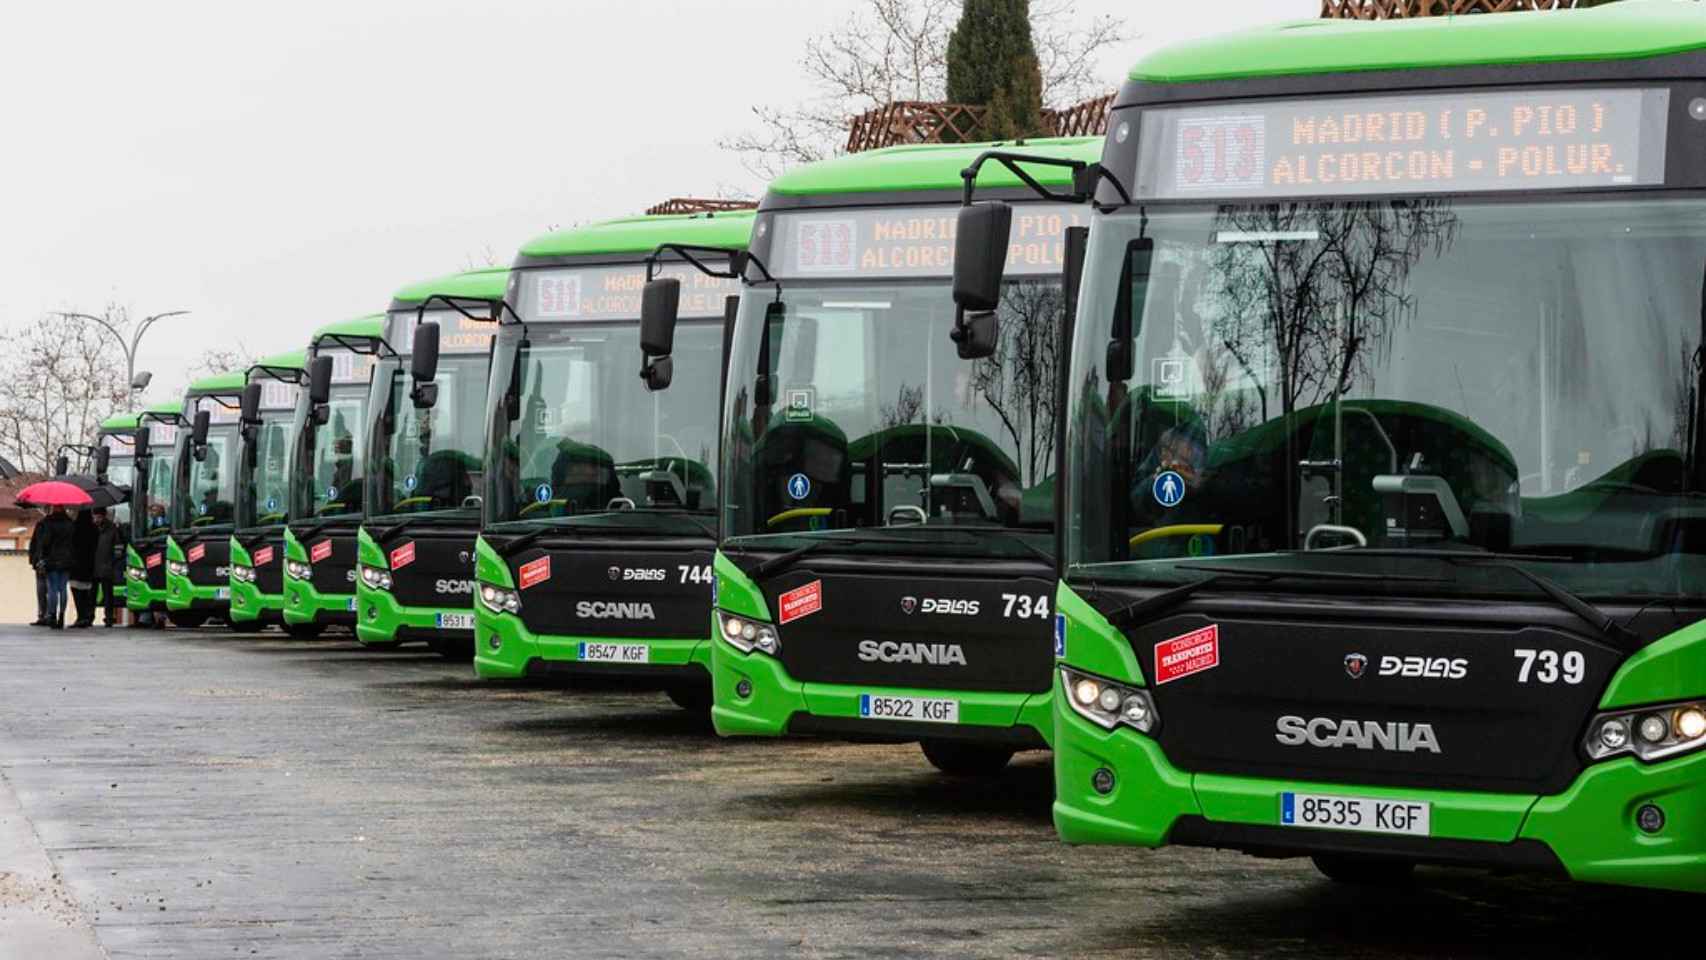 Autobuses de la Comunidad de Madrid